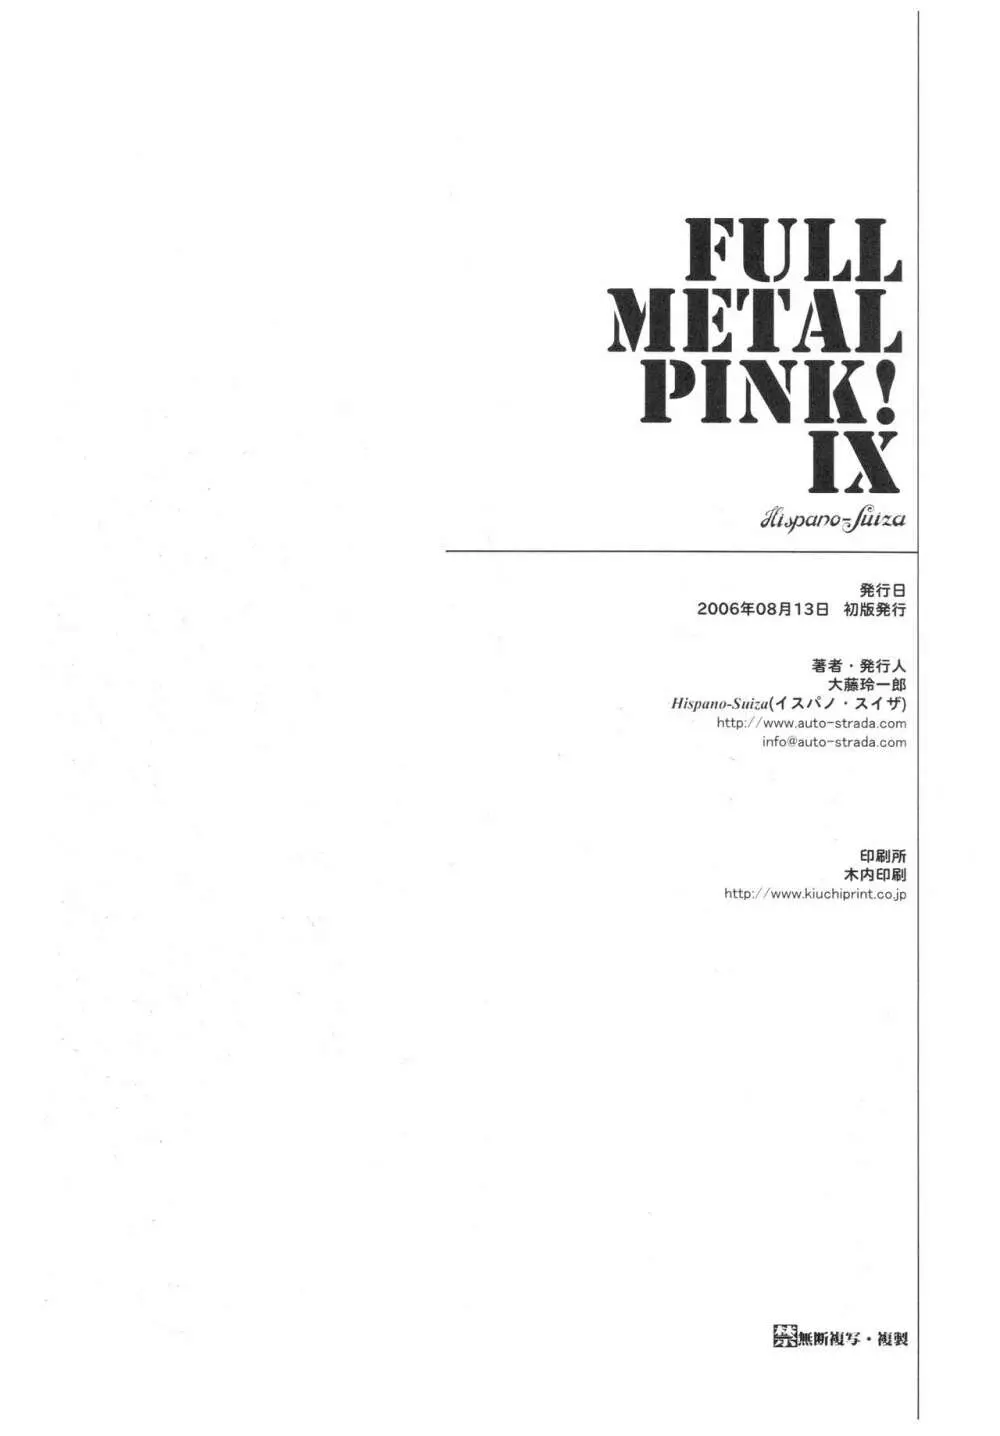 Full Metal Pink! IX Page.2